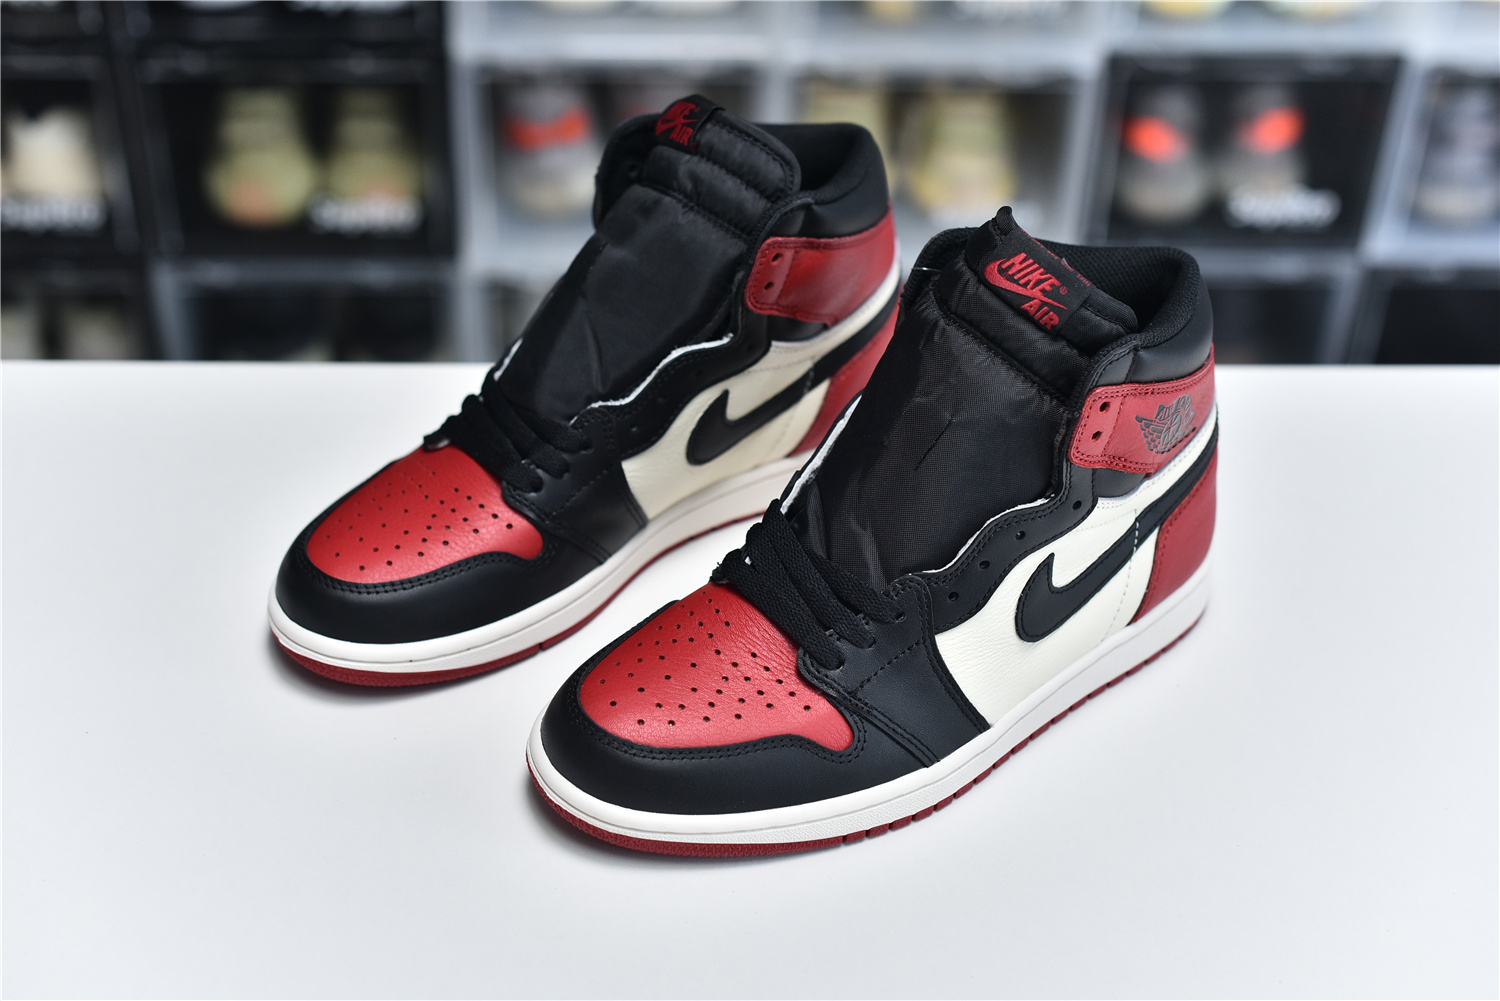 Nike Air Jordan 1 Retro High Og Red Black White Men Sneakers 555088 610 Kickbulk 8 - kickbulk.co